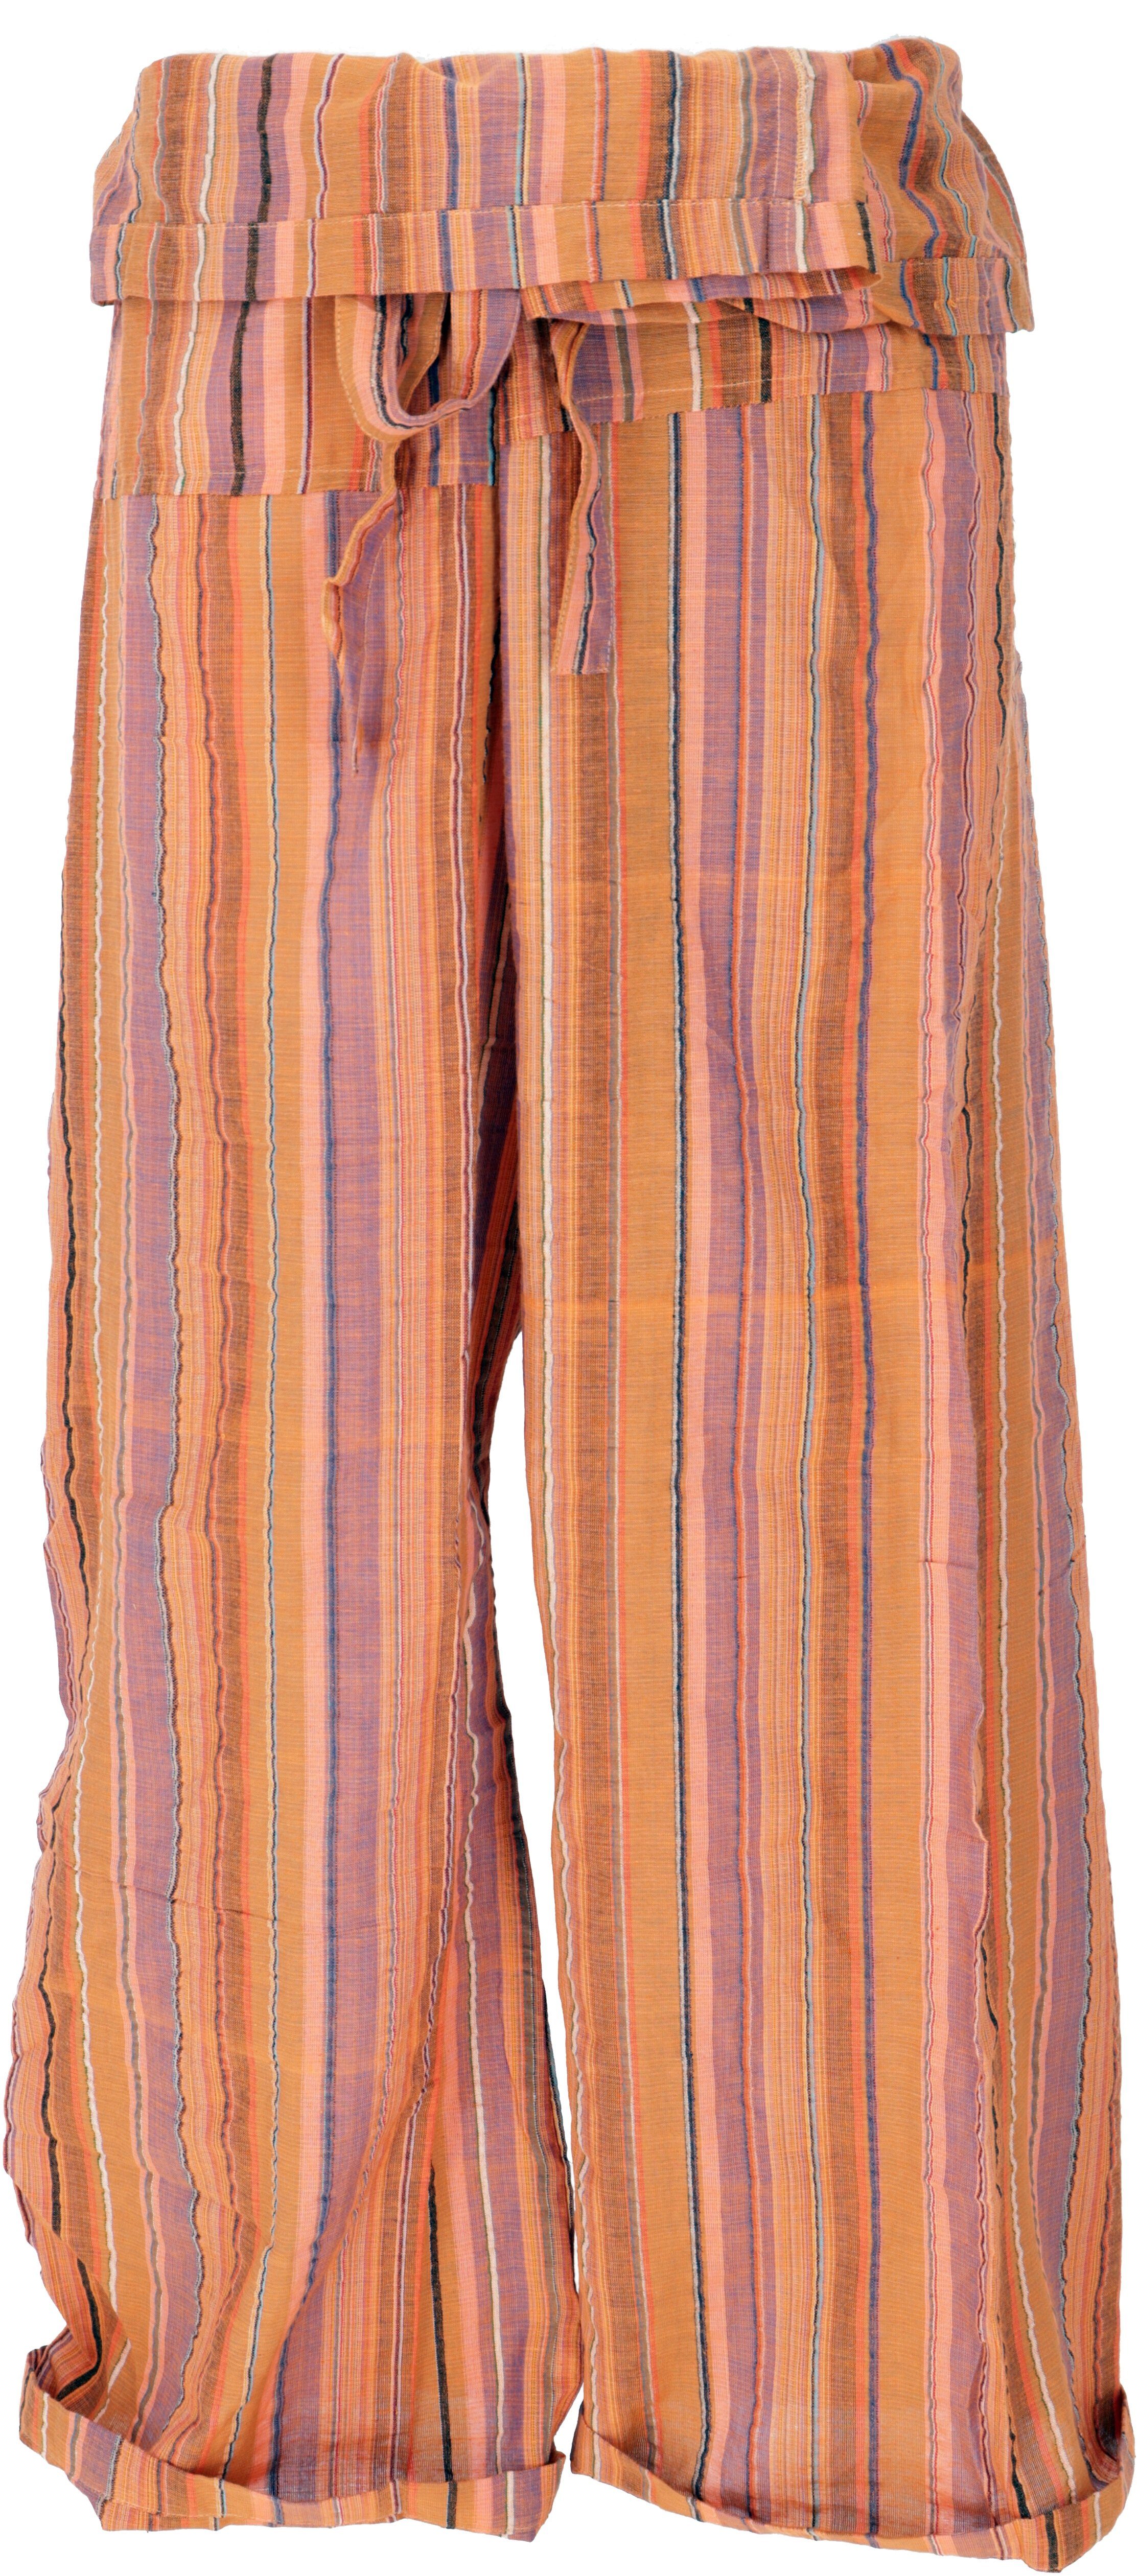 Guru-Shop Relaxhose Thai Fischerhose aus gestreift gewebter, feiner.. Ethno Style, alternative Bekleidung orange/bunt